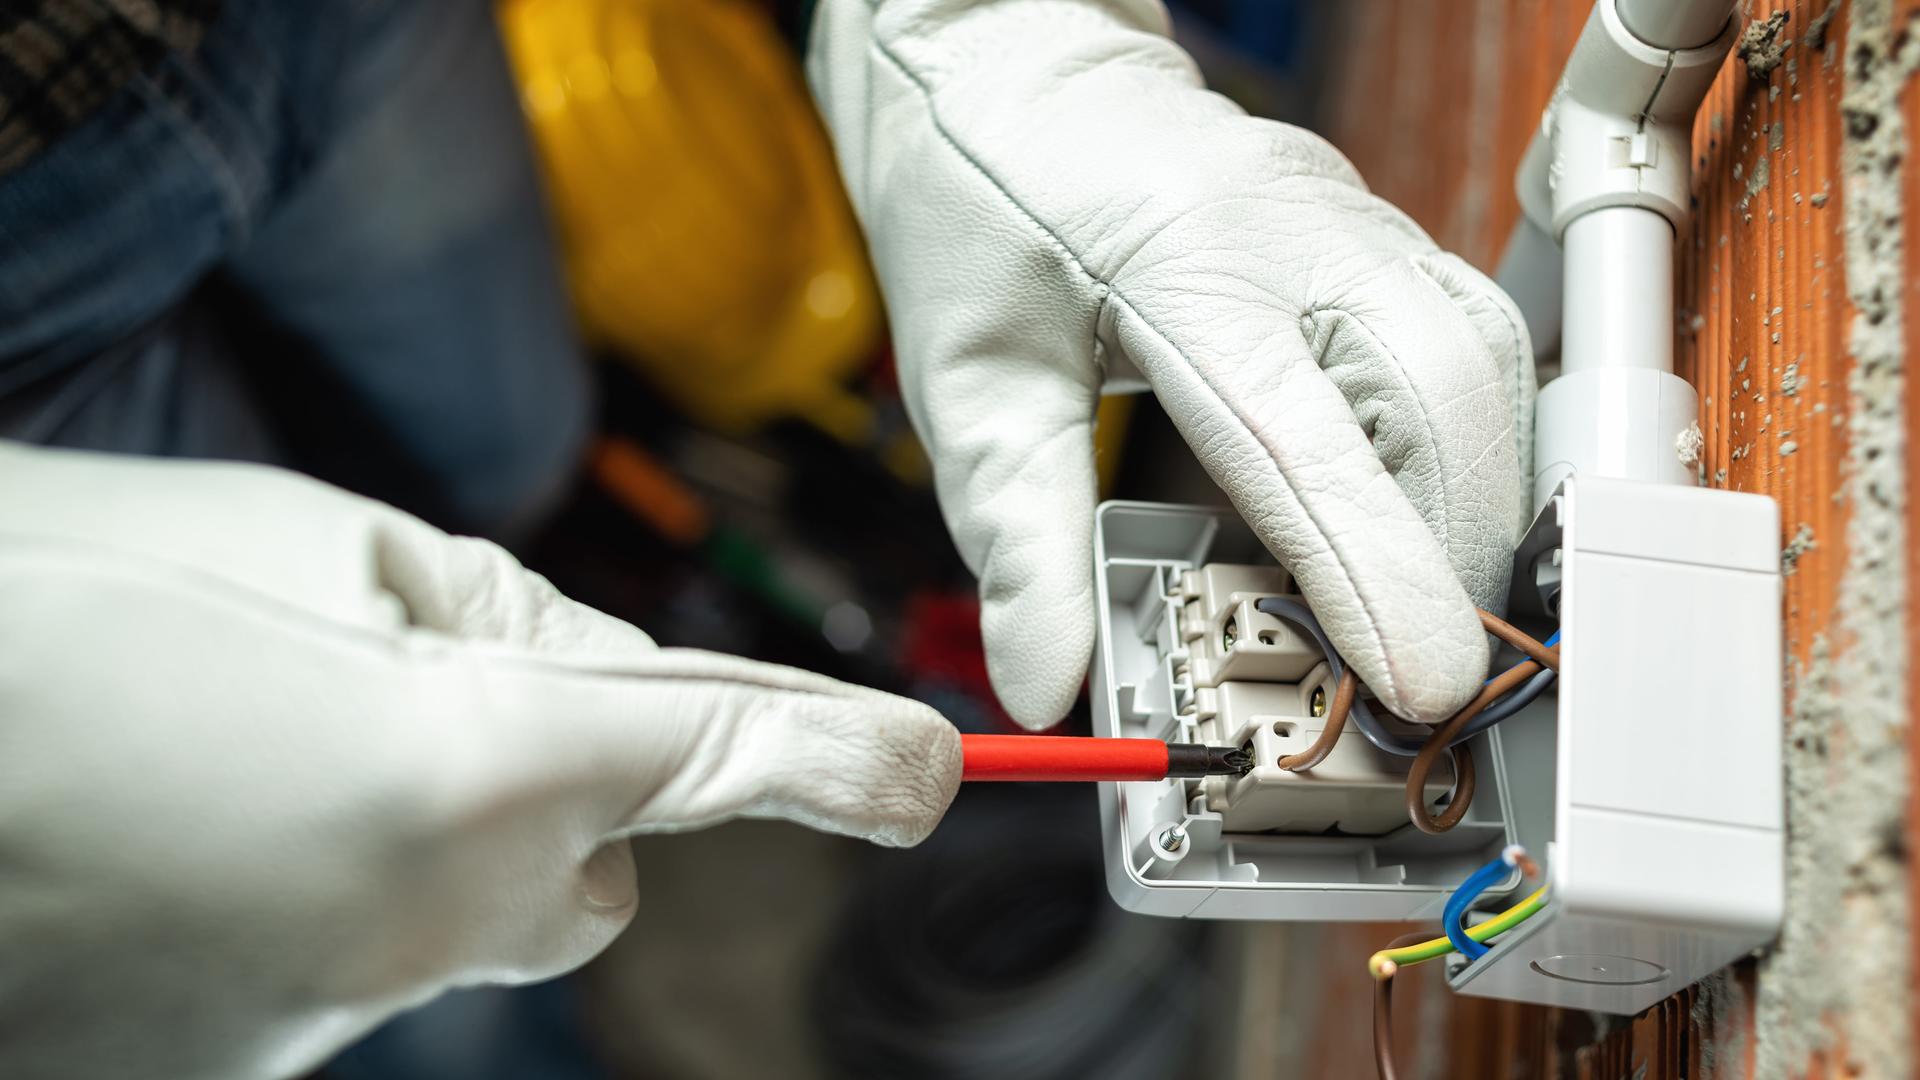 Ein Elektriker schraubt an einem Schalter, zu sehen sind nur die Hände in Handschuhen.